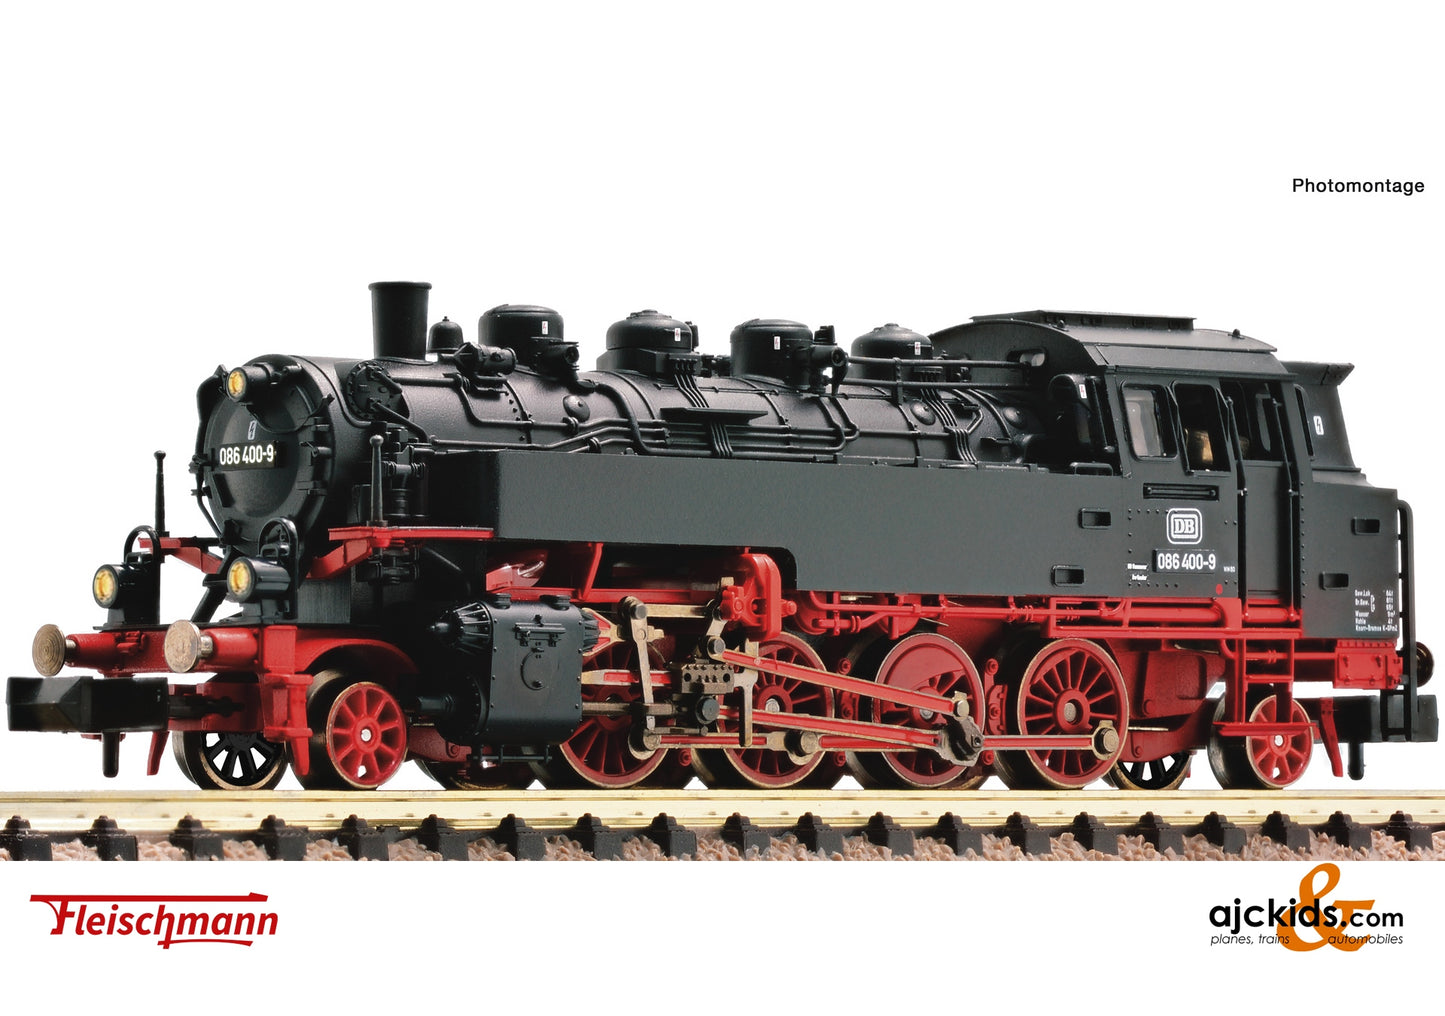 Fleischmann 708604 - Steam locomotive class 086, DB at Ajckids.com